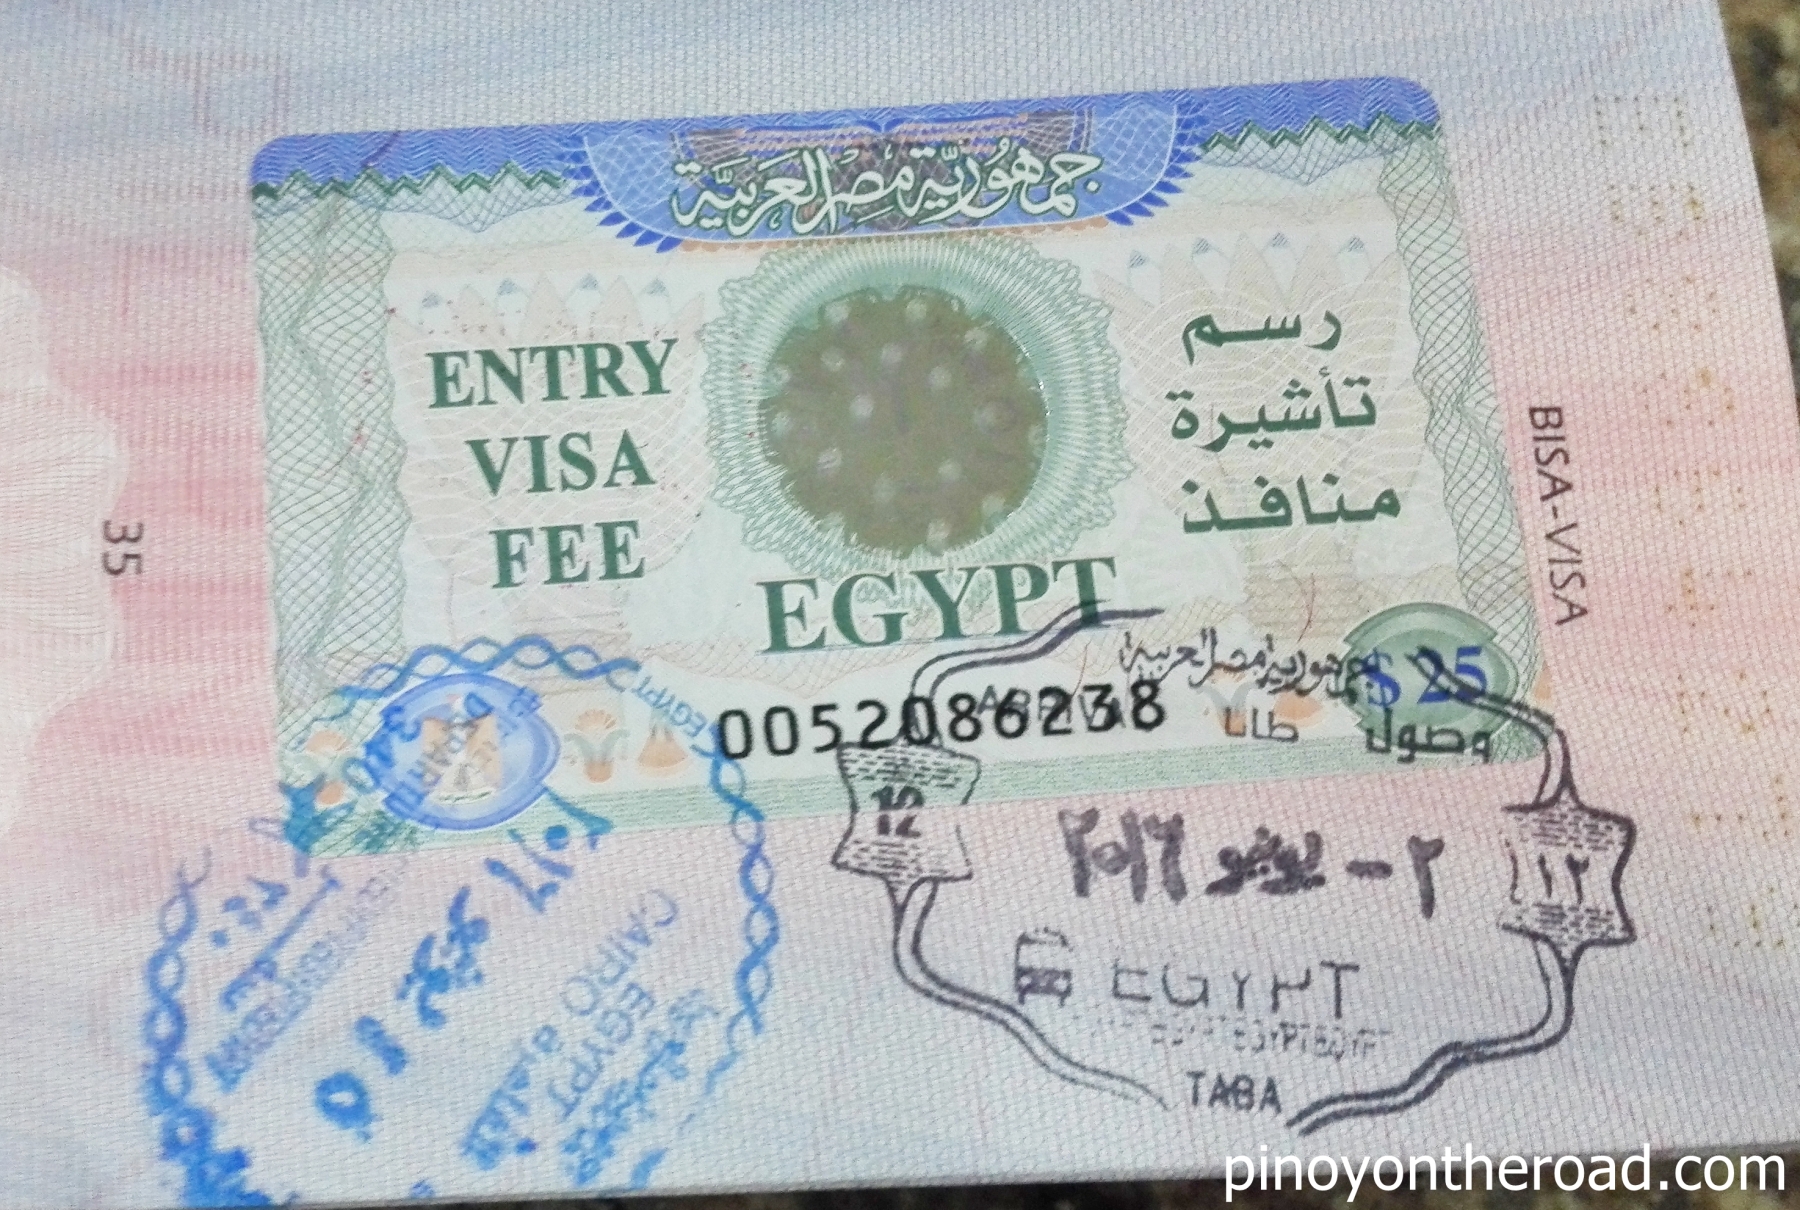 Entry visa. Египетская виза. Виза в Египет. Египетская виза для россиян.